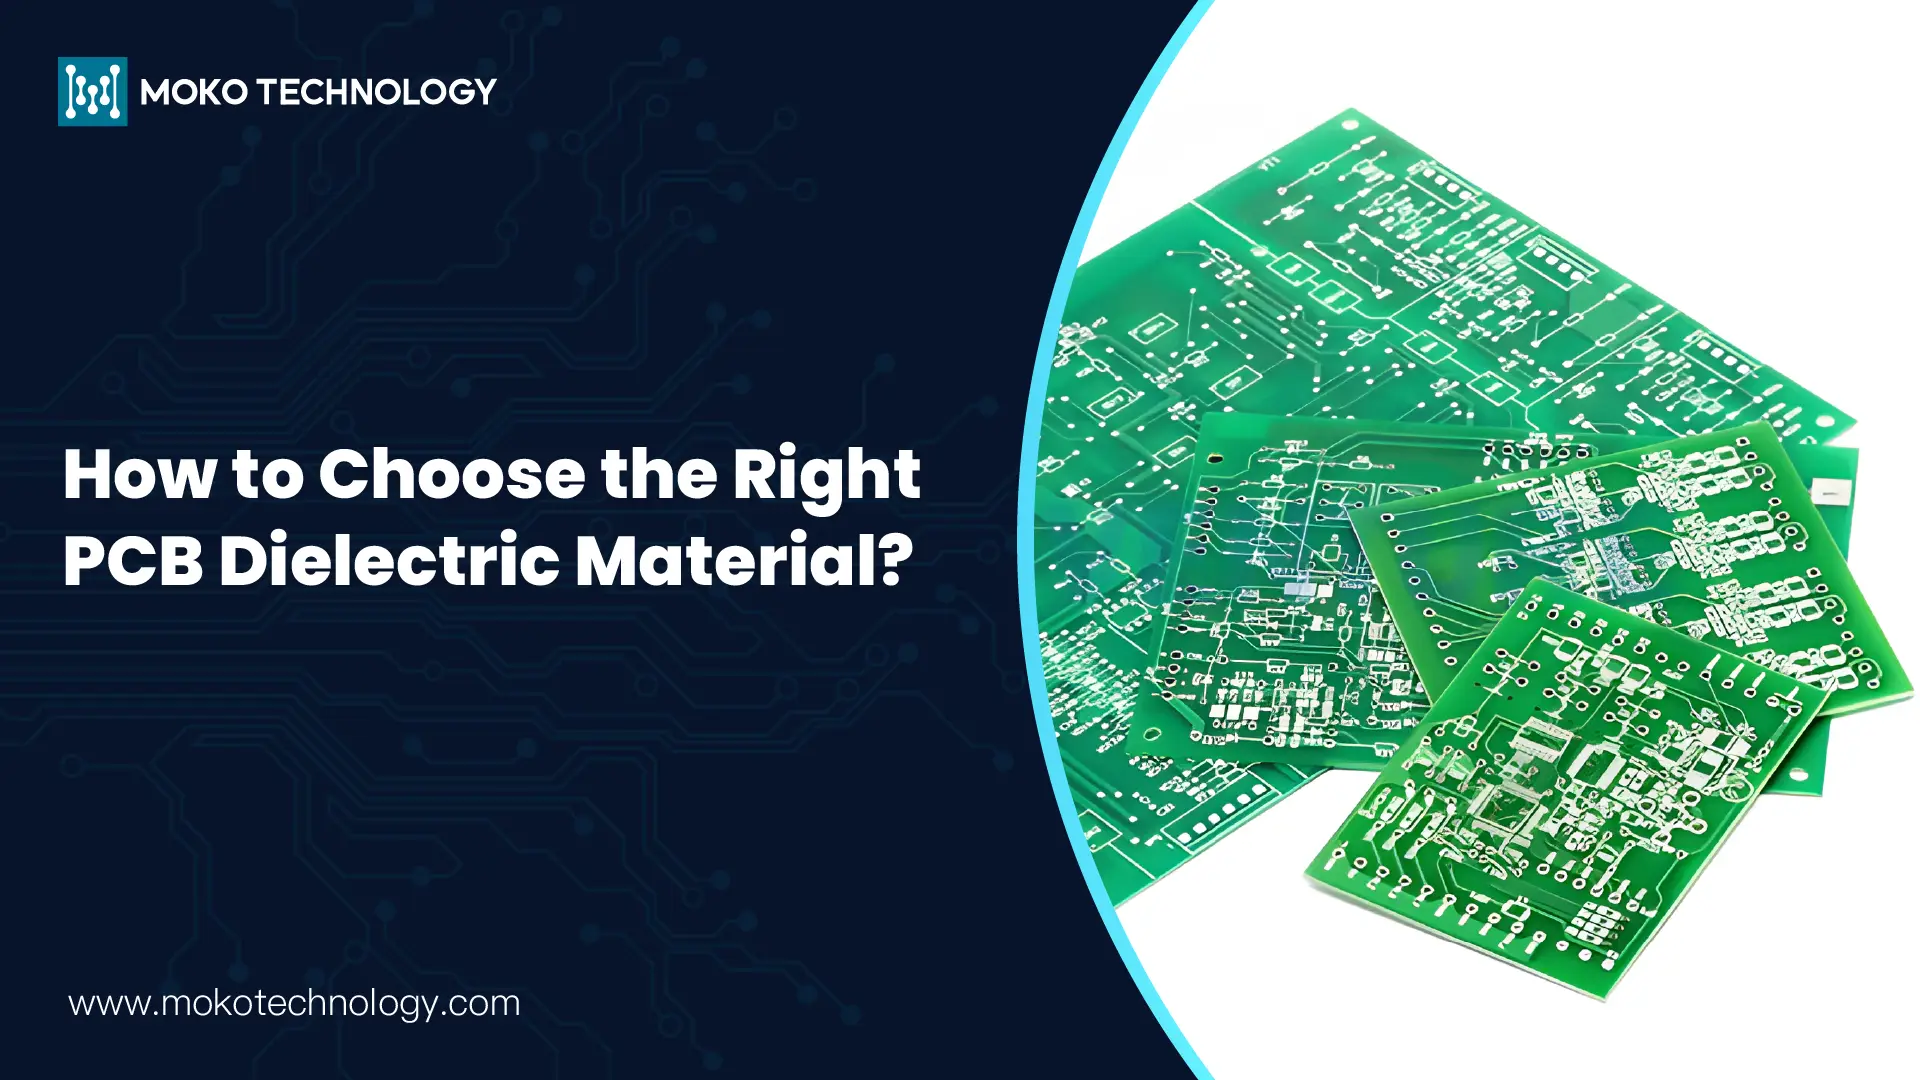 Como escolher o material dielétrico correto para PCB